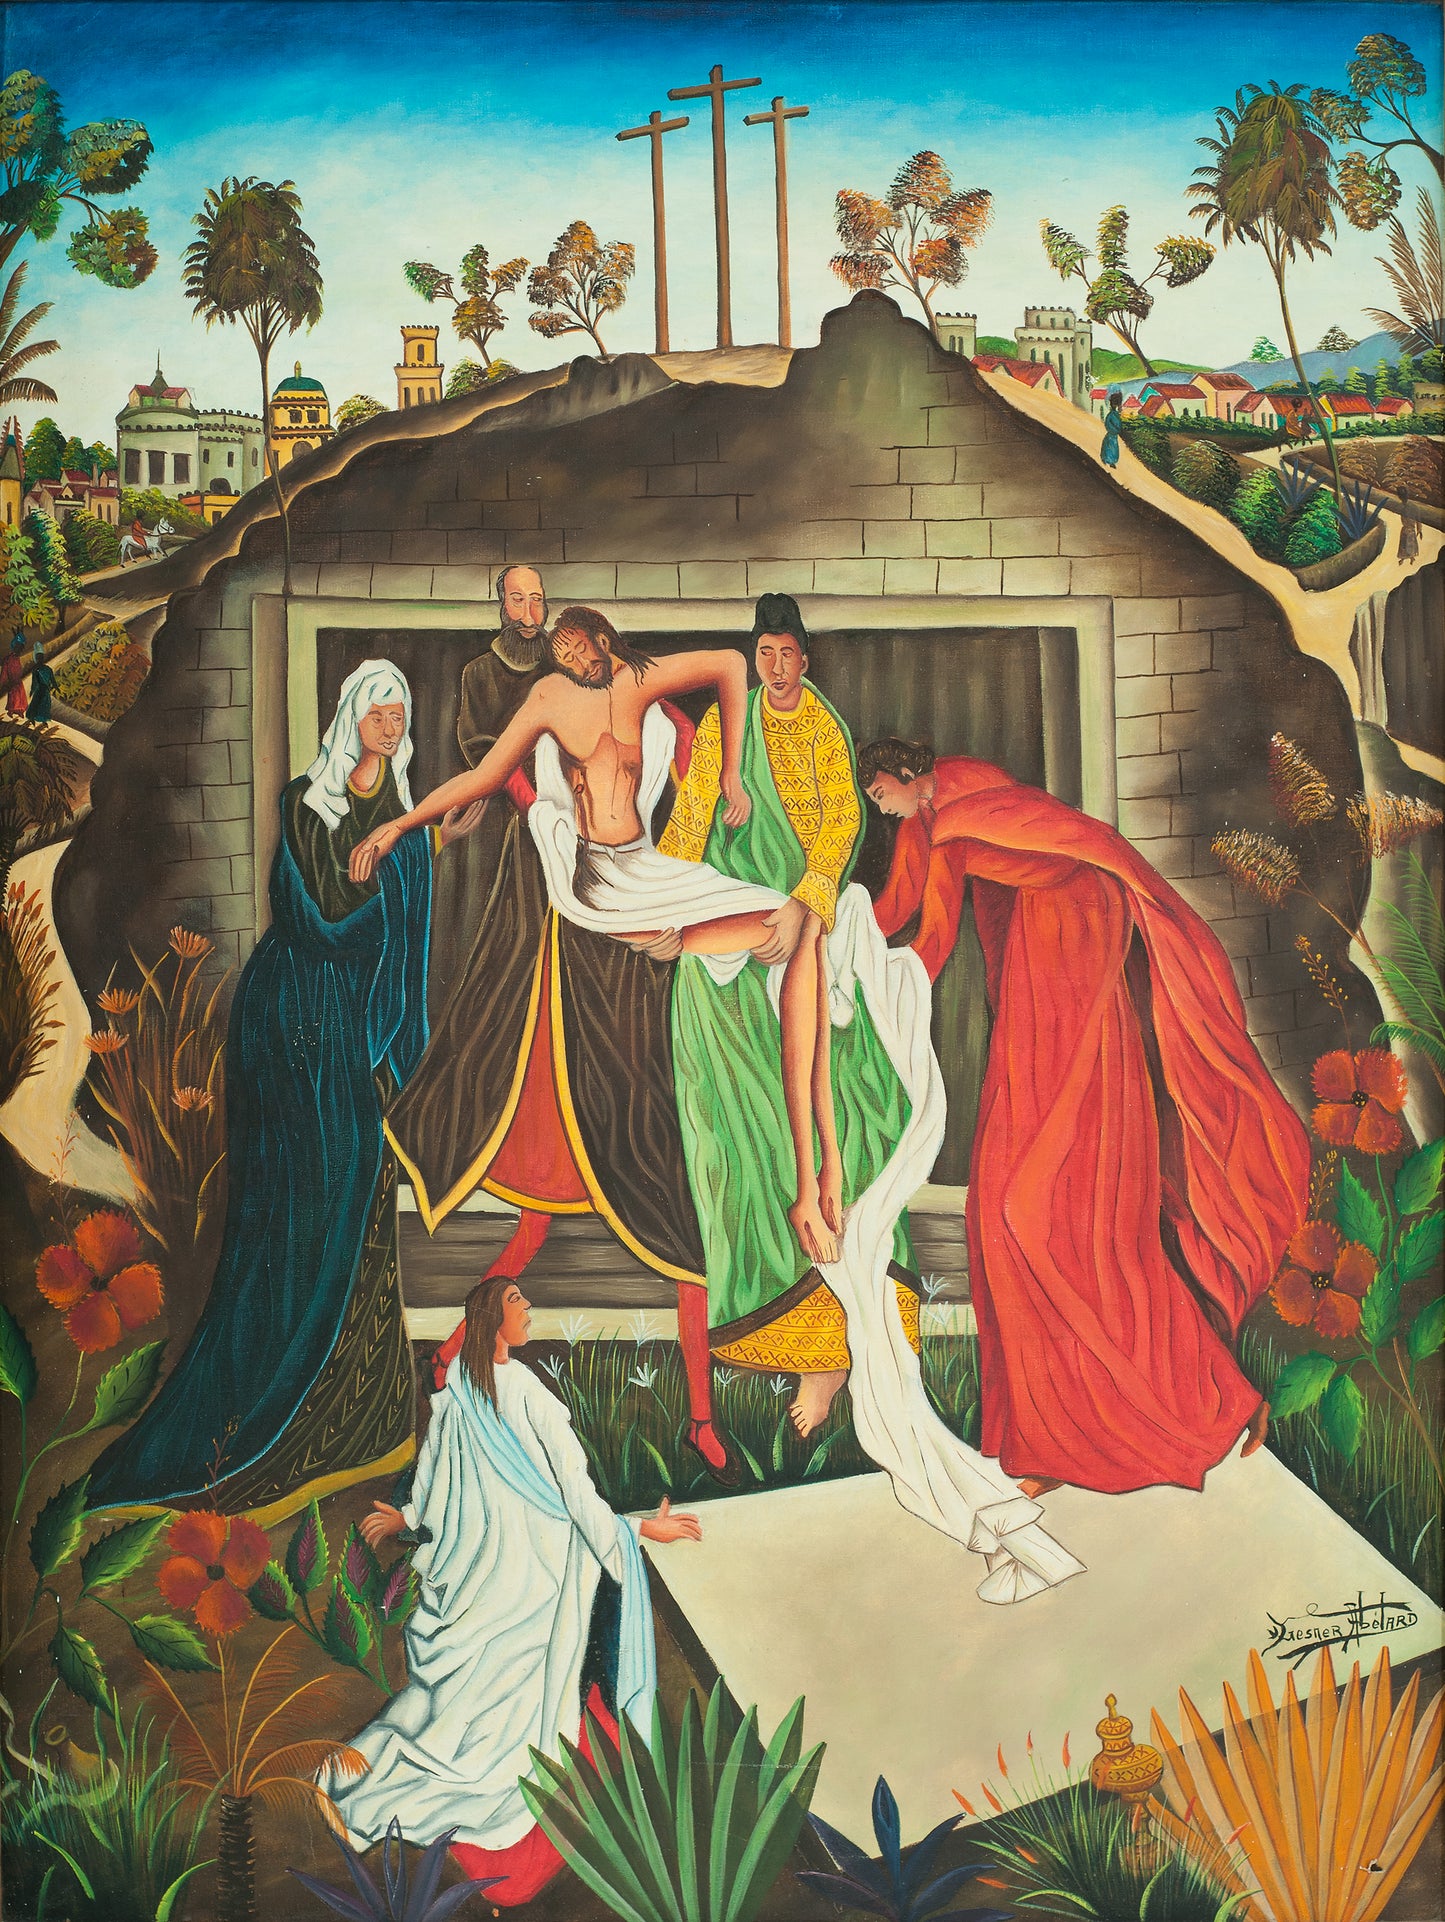 Gesner Abélard (Haïtien, 1922-DCD) 48"x36" La Passion de Jésus c1976 Huile sur toile Peinture non encadrée #51-3-96GSN-Fondation Marie &amp; Georges S. Nader